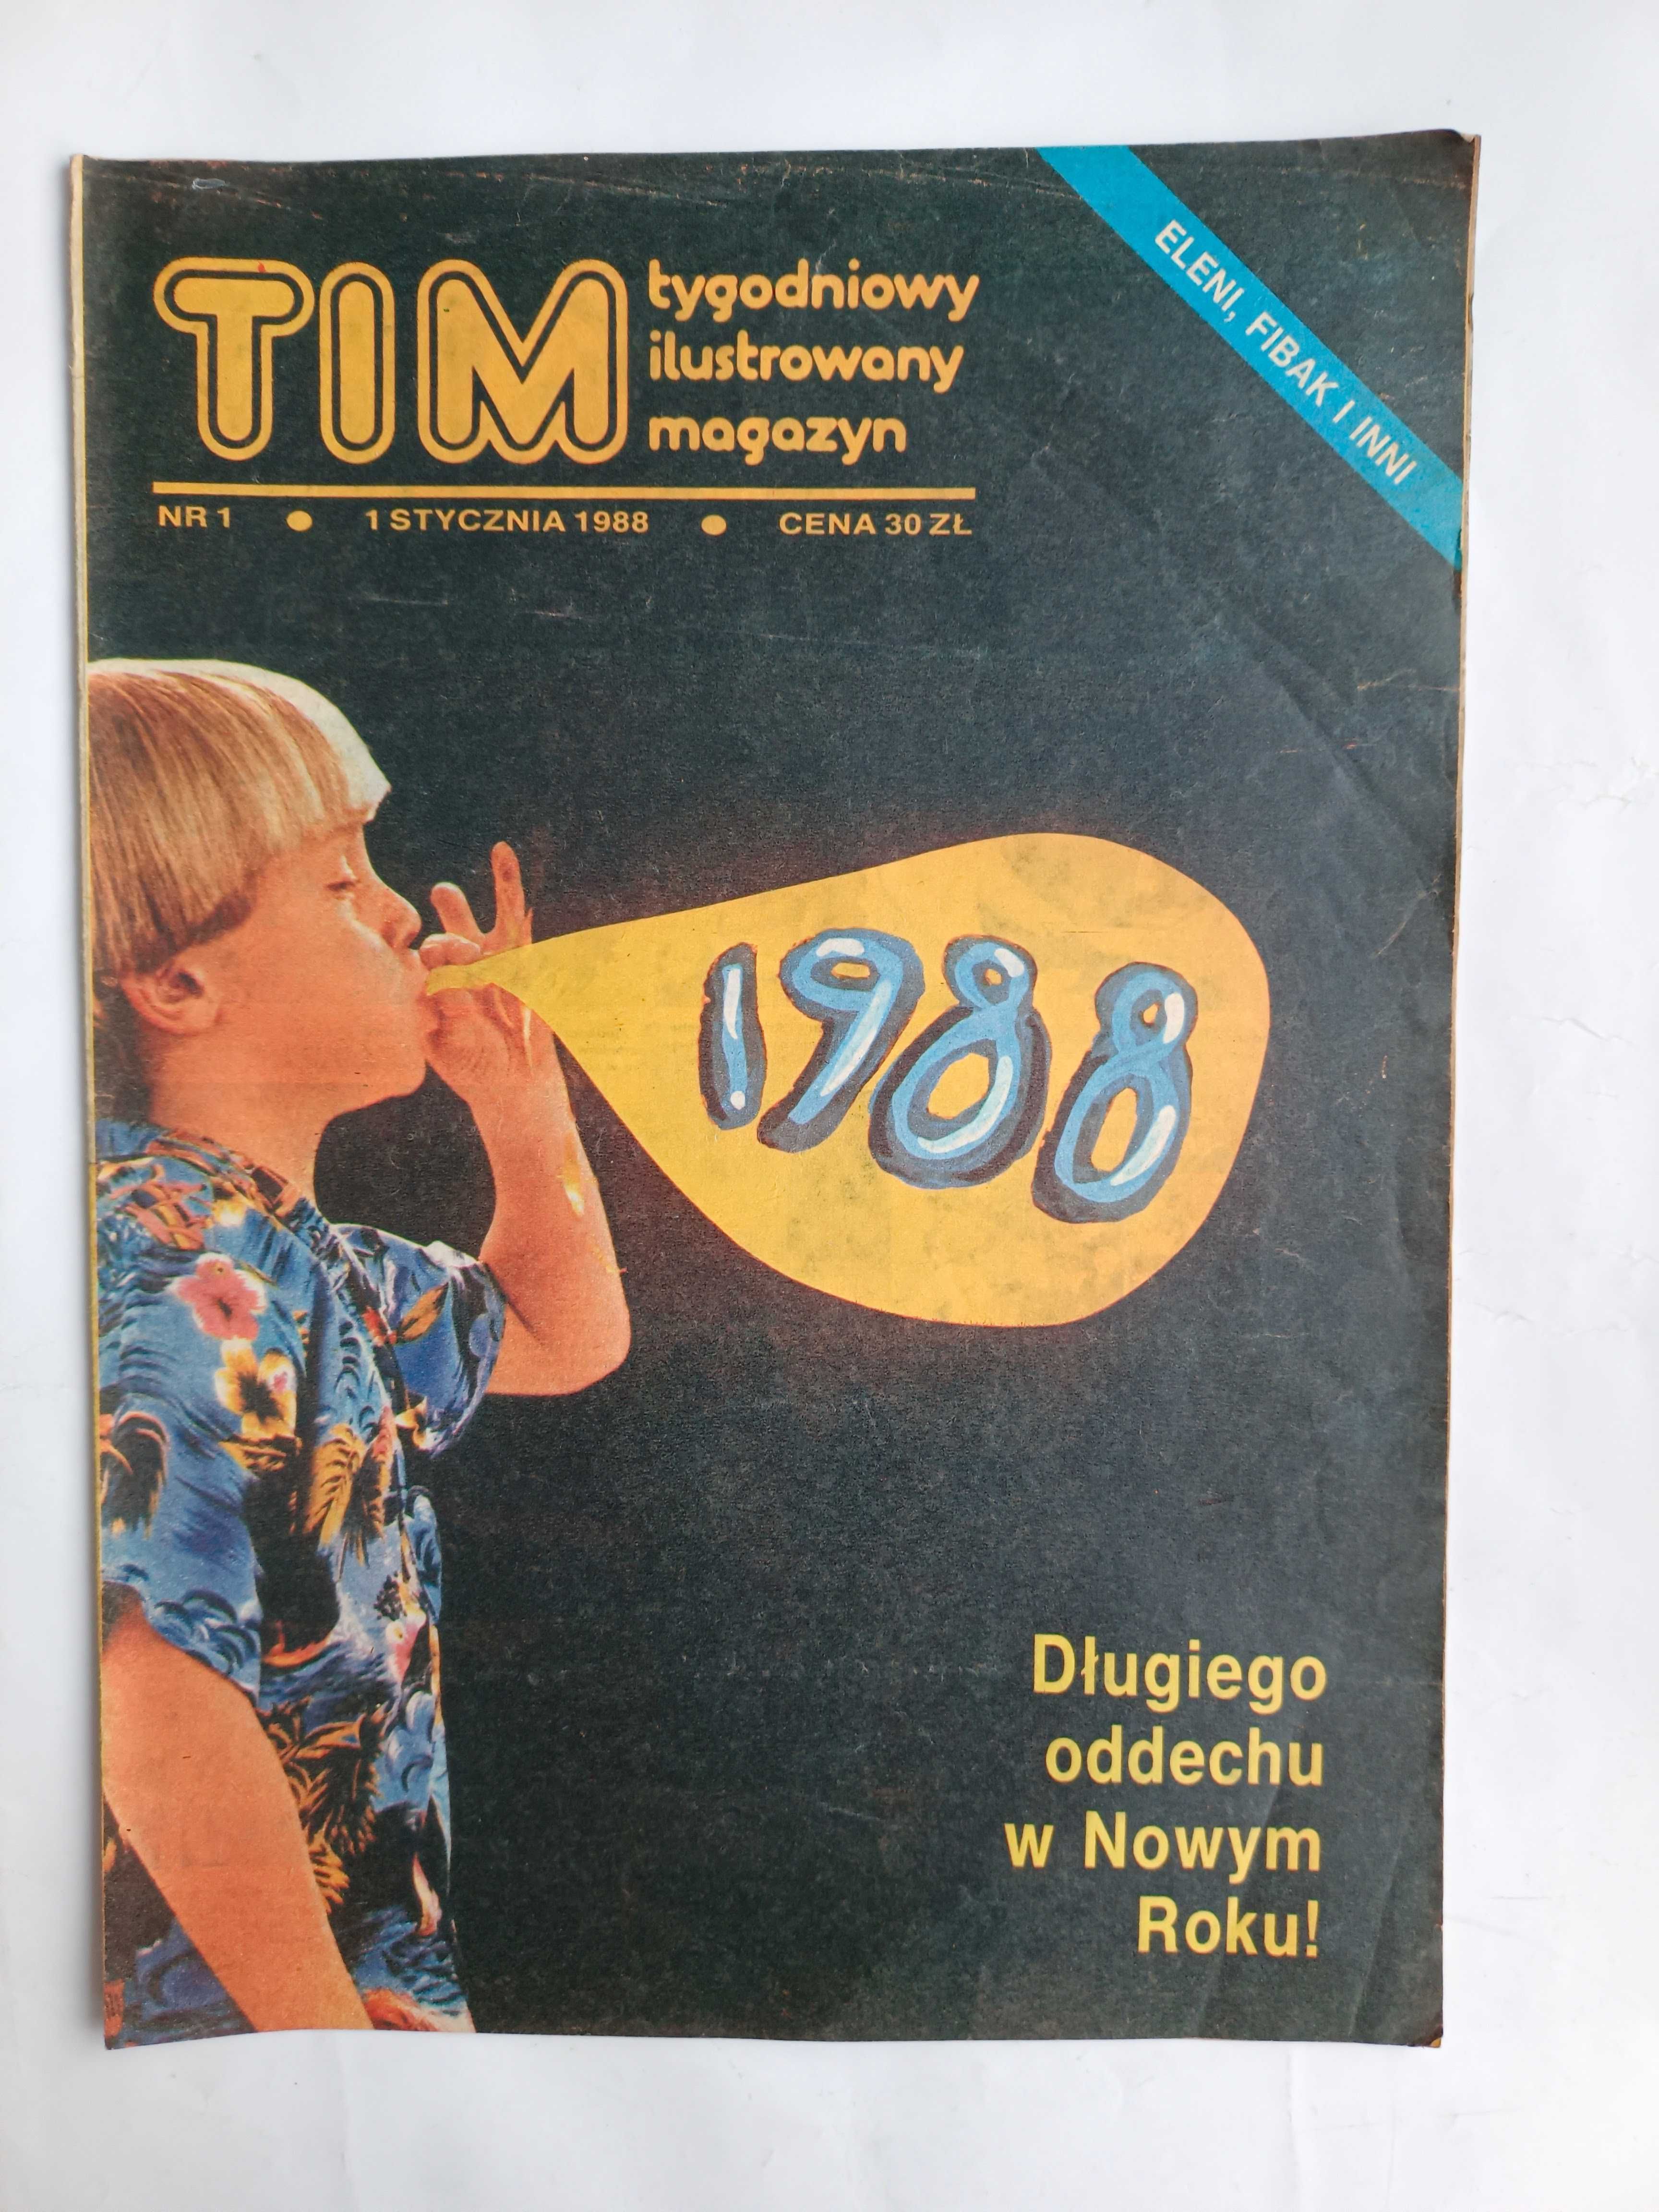 TIM 
Tygodniowy ilustrowany magazyn
Nr  1 z 1 stycznia 1988 r.